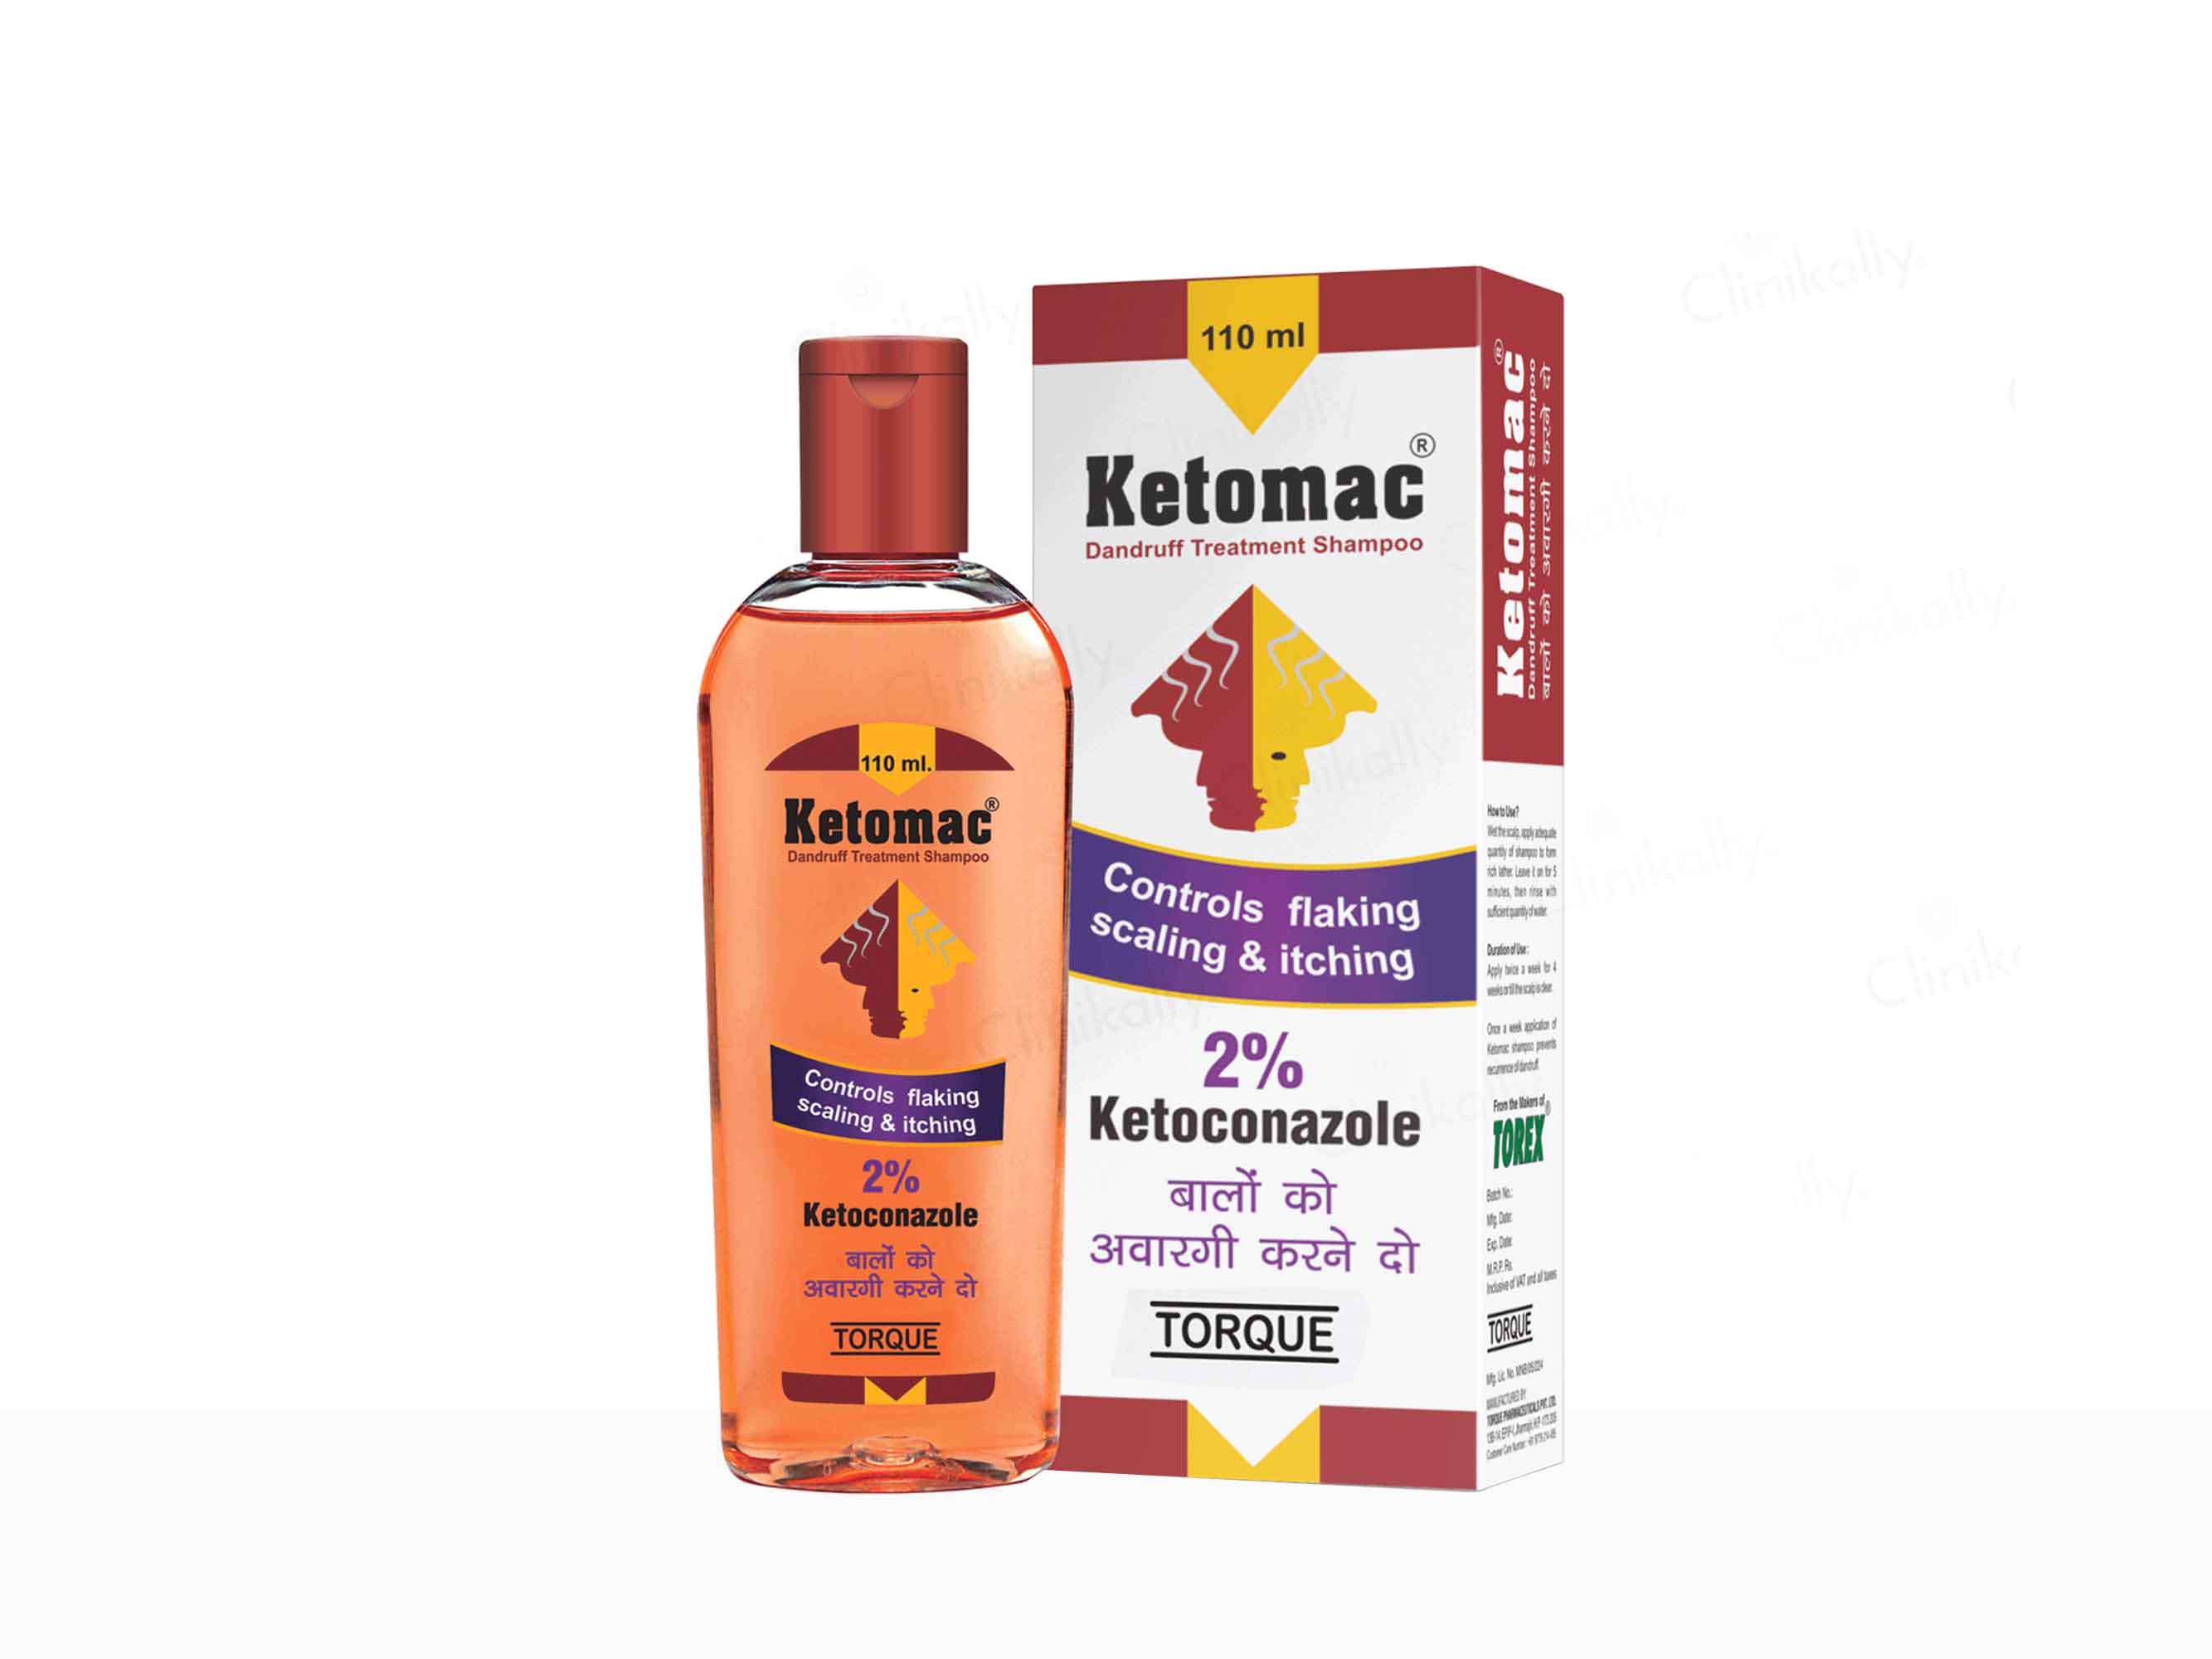 Ketomac Dandruff Treatment Shampoo - Clnikally